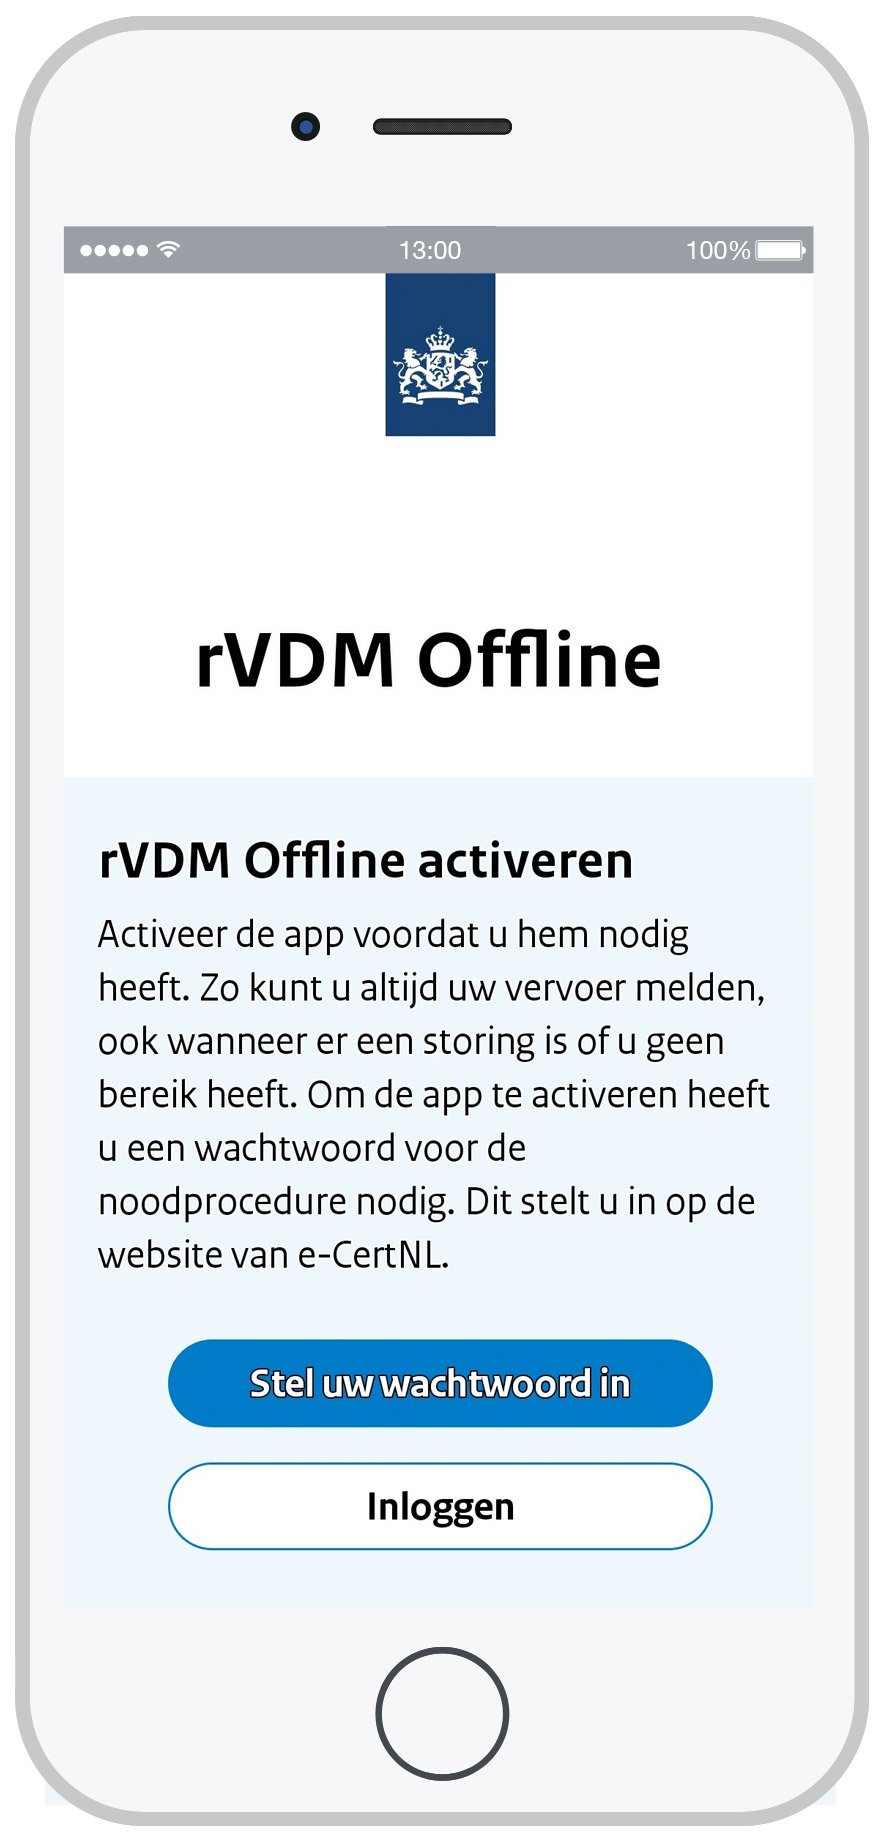 Schermafdruk van het startscherm van de rVDM Offline app.